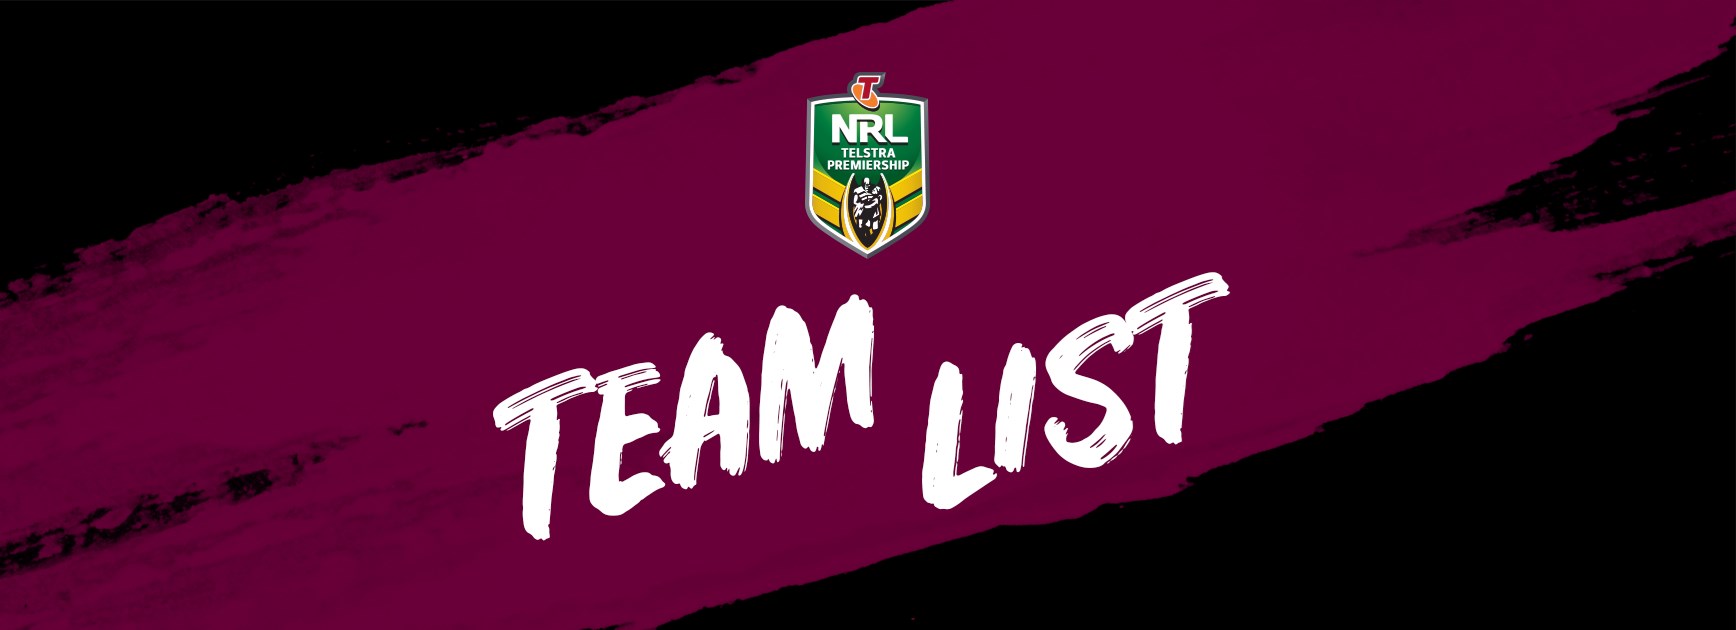 NRL Team List - Round 19